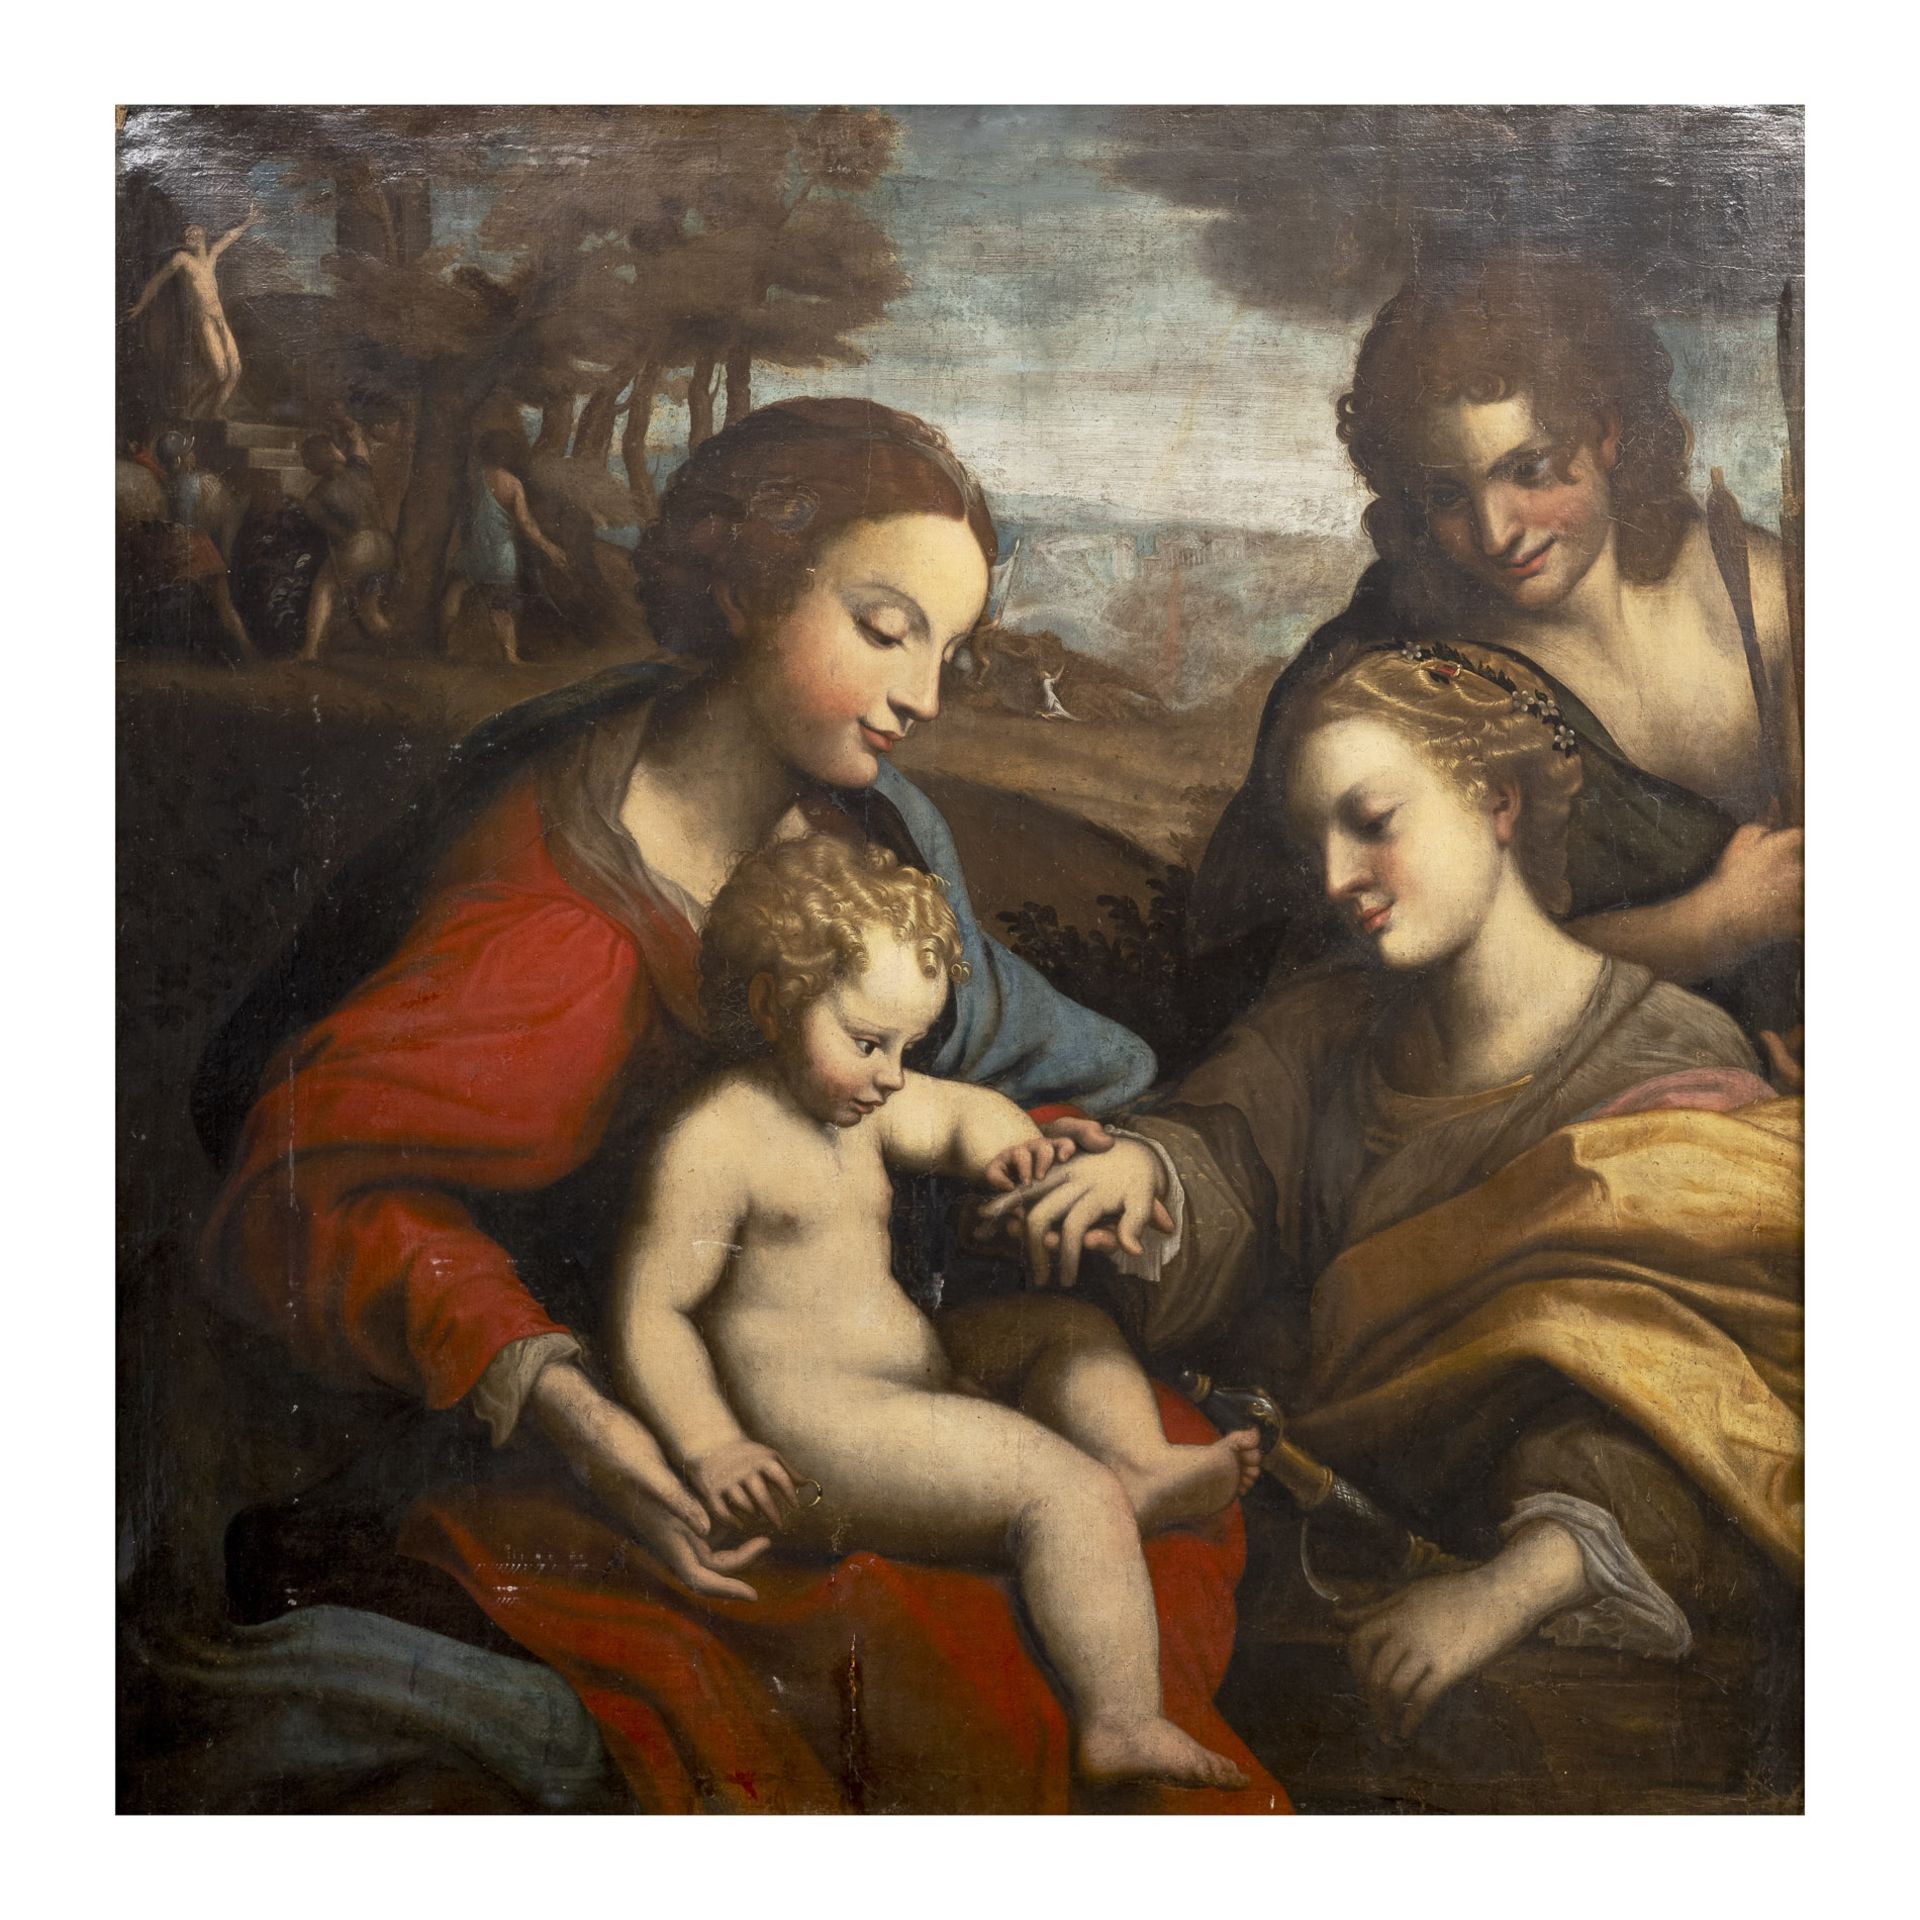 Nach Antonio da Correggio, Mythische Hochzeit der Heiligen Katharina von Alexandrien